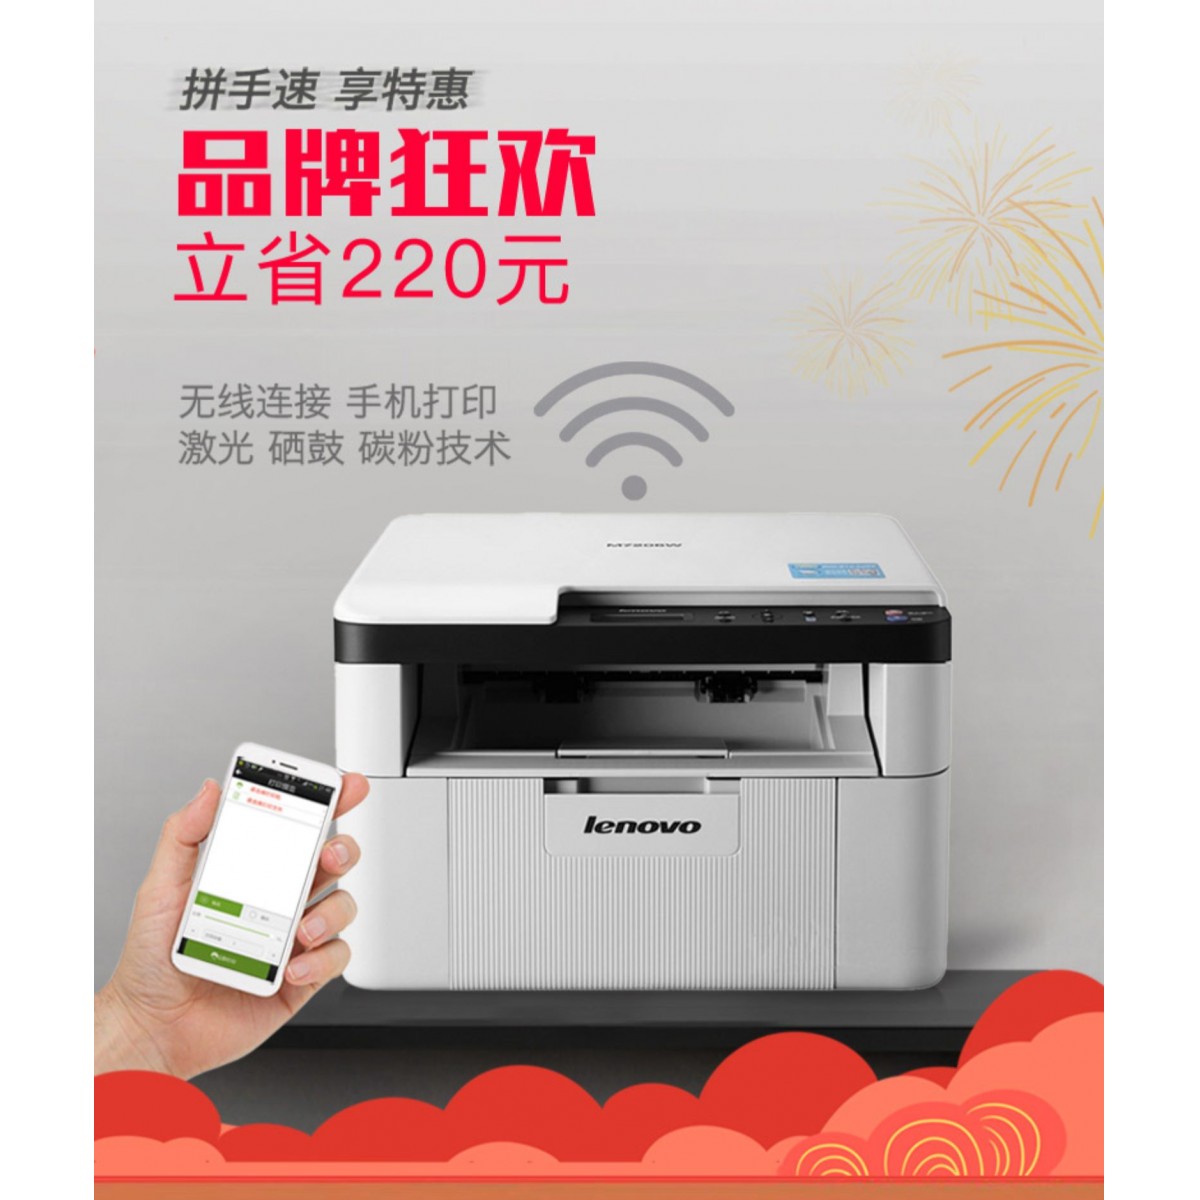 联想M7206W无线激光打印机复印一体机扫描家用小型办公商用黑白打字复印件手机WiFi三合一A4商务多功能复印机